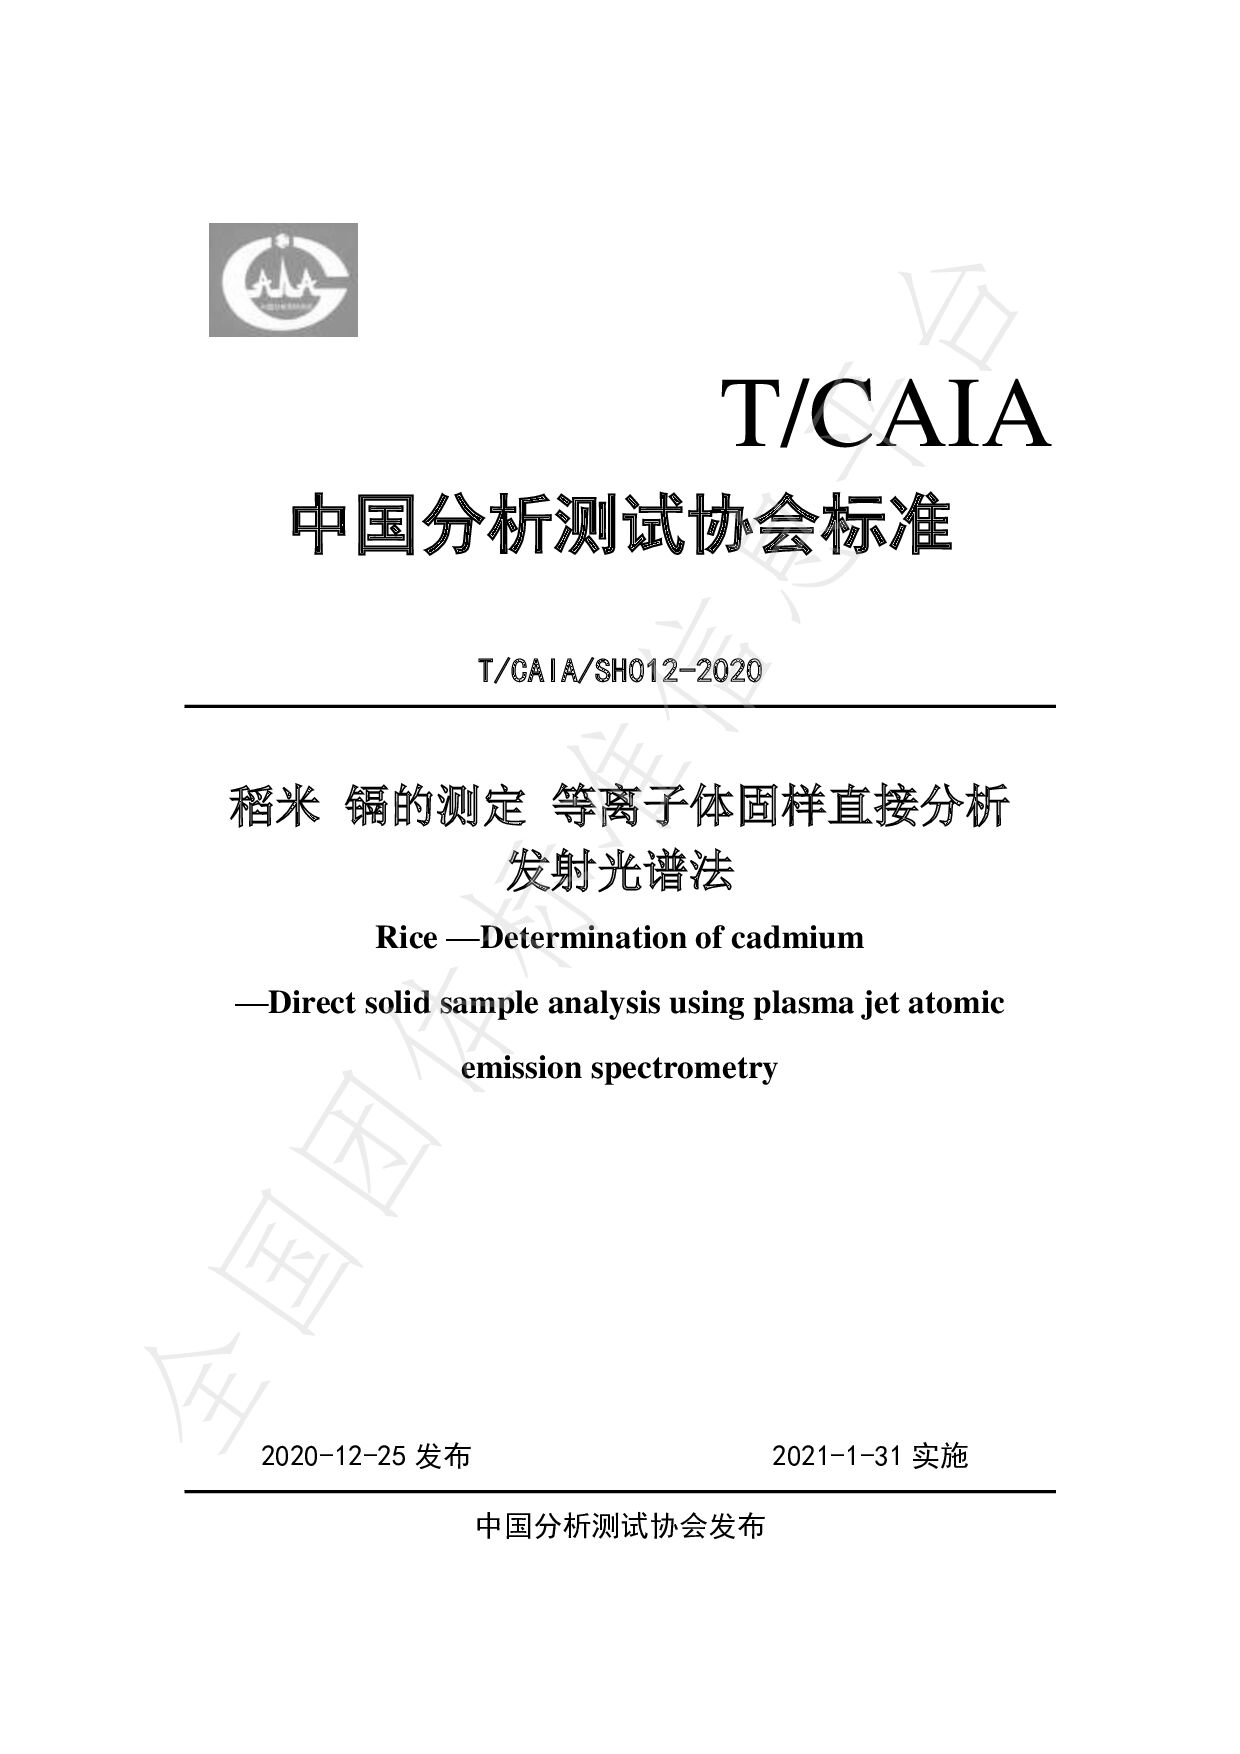 T/CAIA SH012-2020